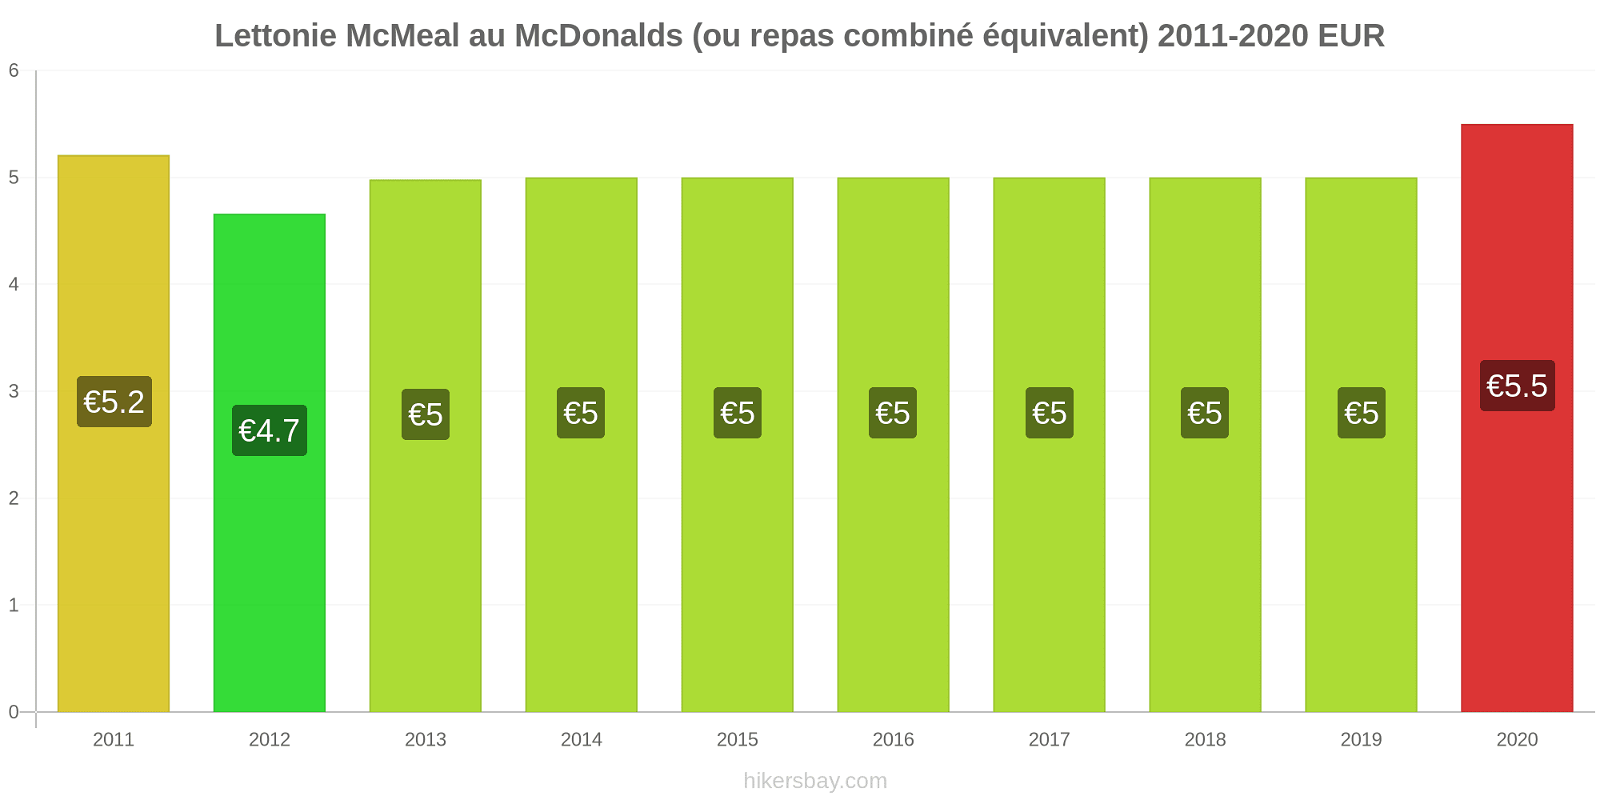 Lettonie changements de prix McMeal à McDonald ' s (ou Combo équivalent tourteau) hikersbay.com